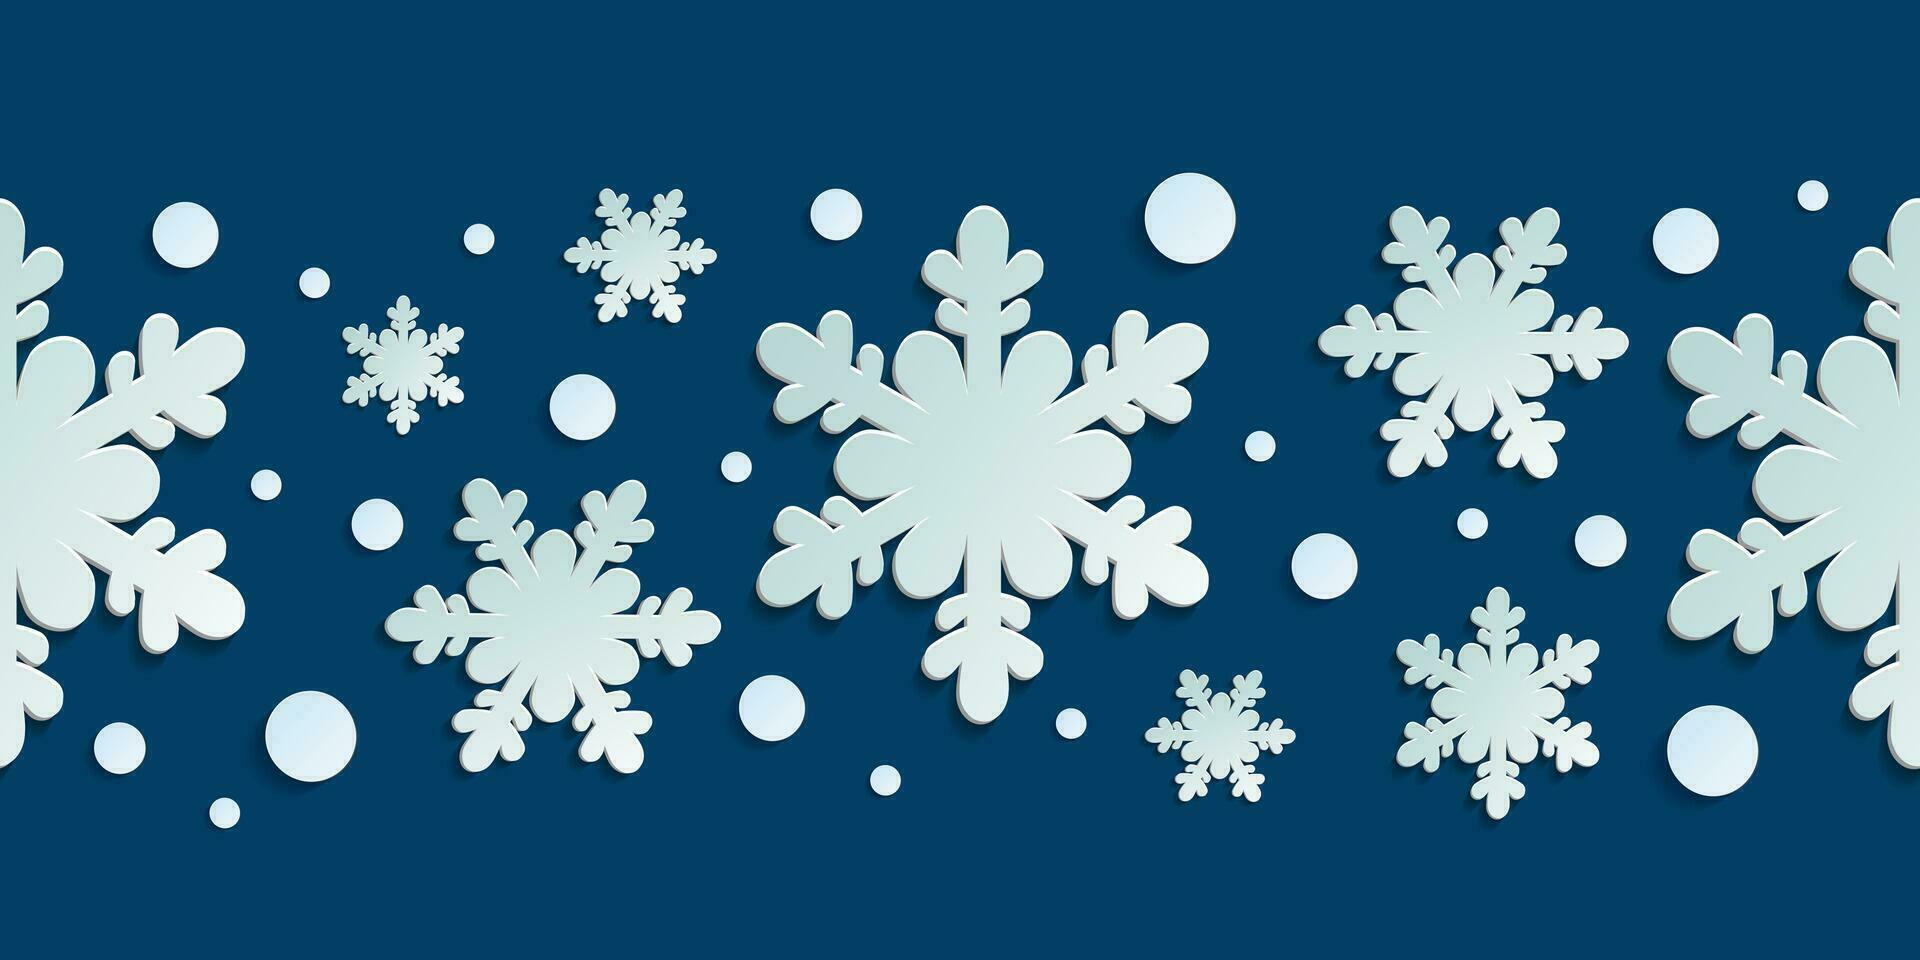 invierno sin costura modelo con papel cortar copos de nieve. Navidad diseño 3d ilustración en azul de colores antecedentes para presentación, bandera, cubrir, web, volantes, tarjeta, venta, póster y social medios de comunicación. vector